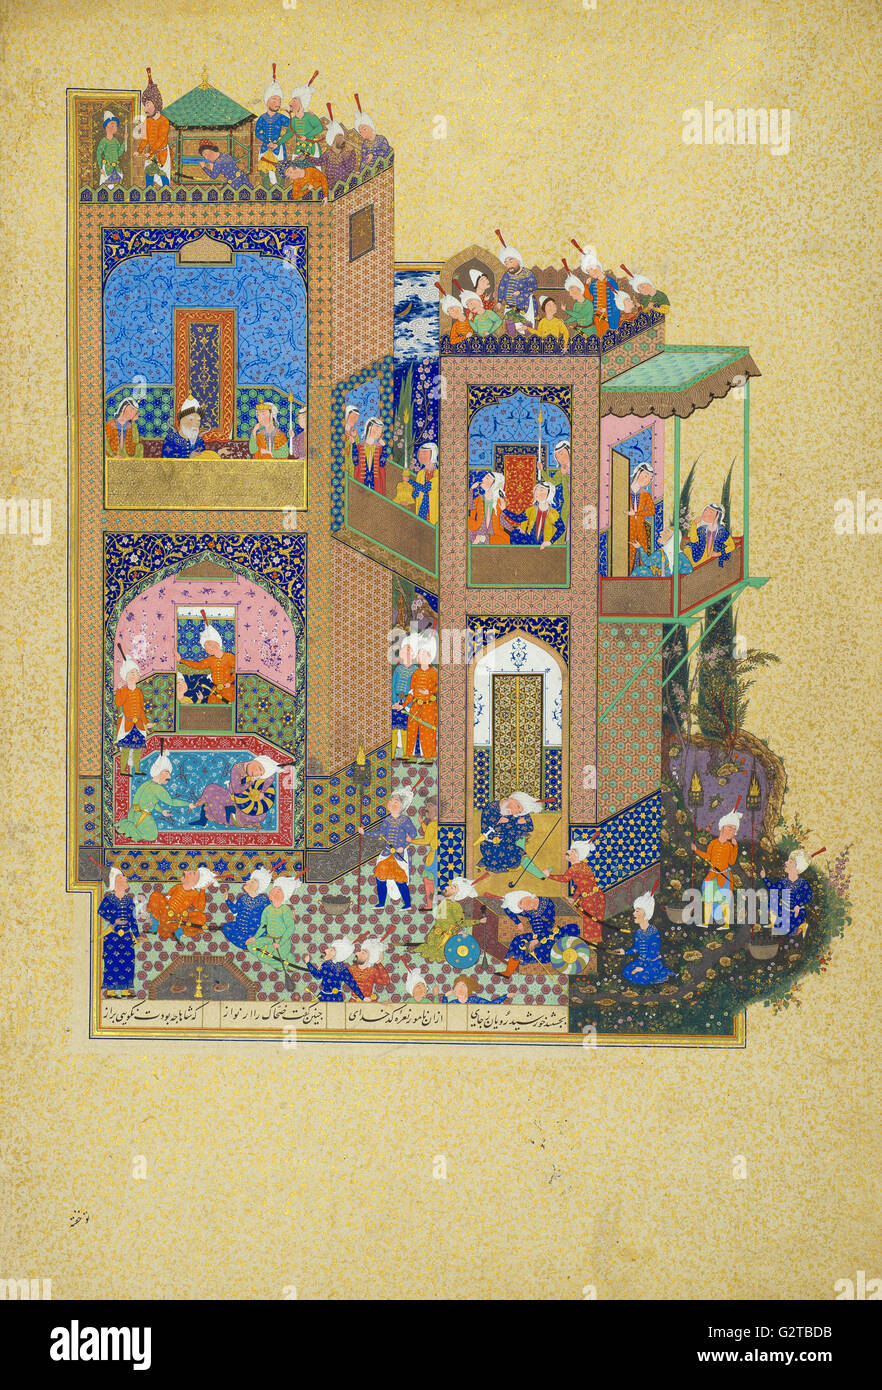 Desconocida, Irán, Siglo XVI - Página del Shahnama - Foto de stock